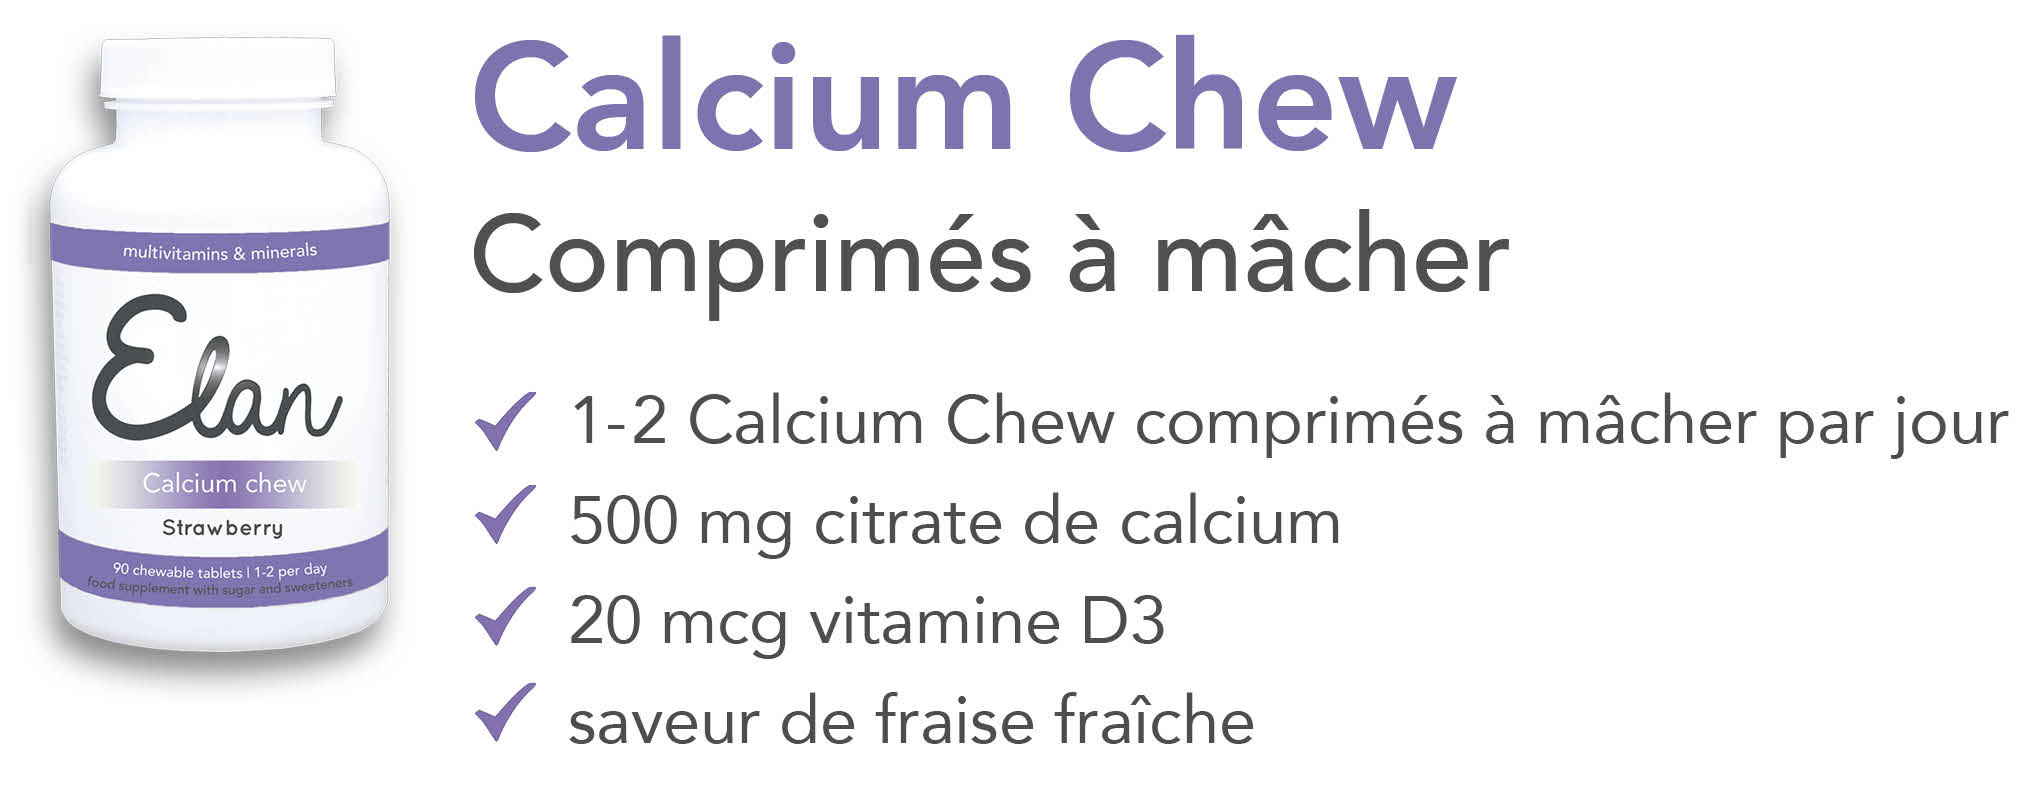 Proefverpakking Calcium Chew kauwtabletten